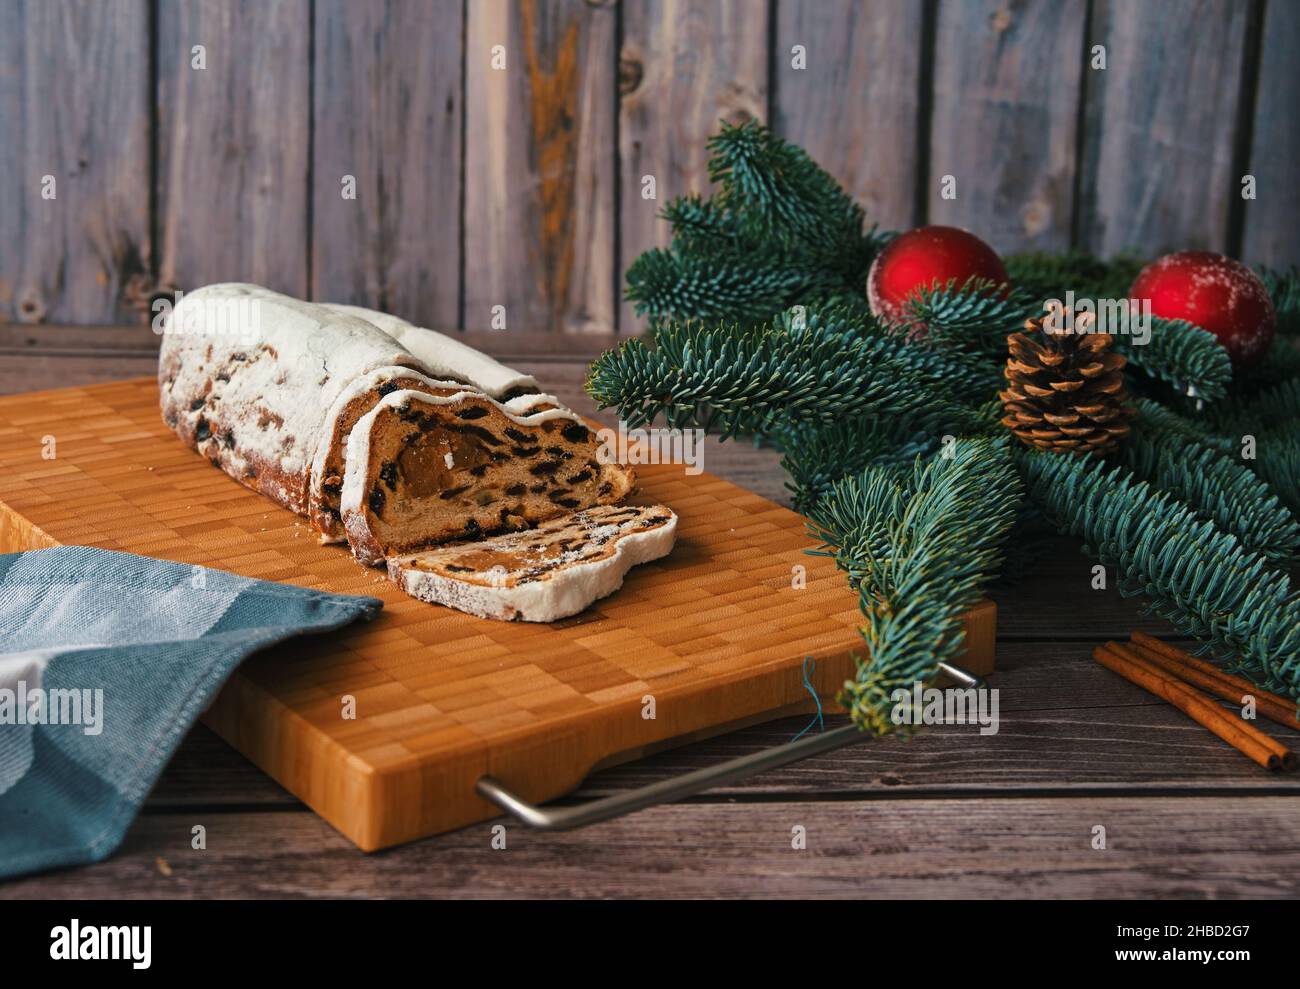 Weihnachtsbrot auf Schneidebrett mit Ast und Weihnachtsschmuck verziert Stockfoto